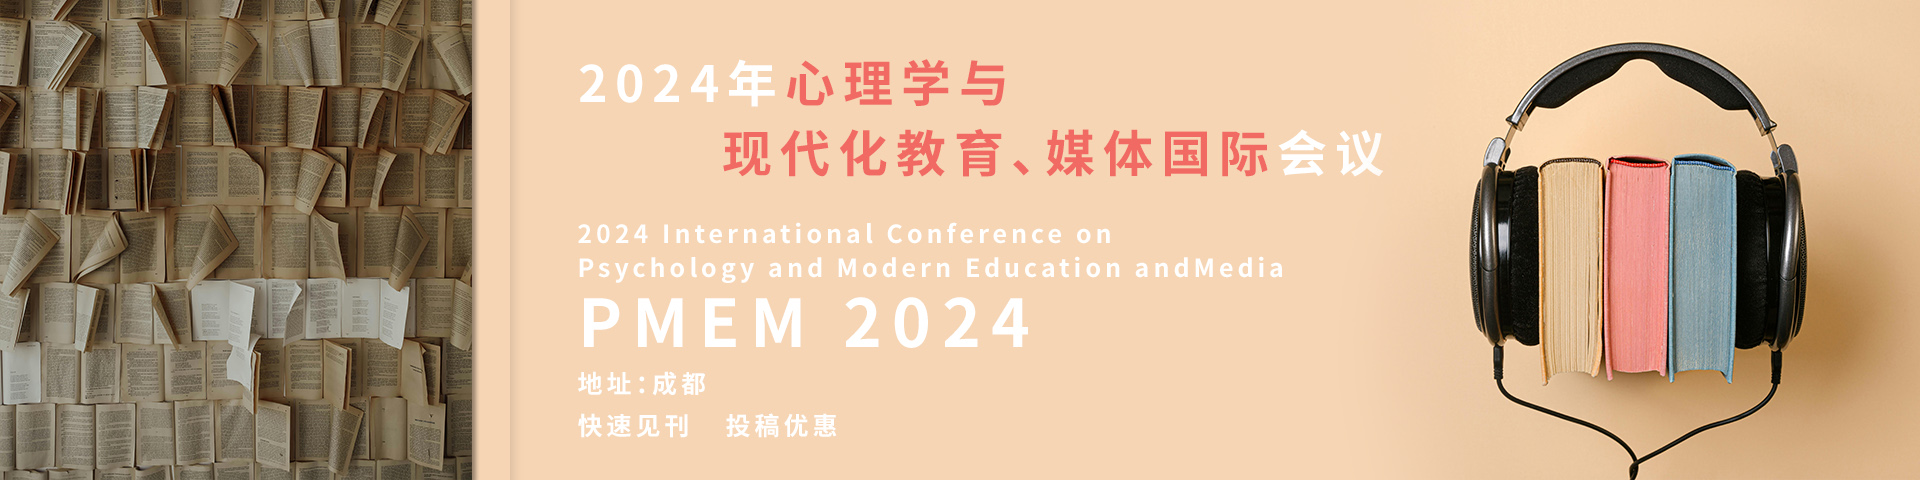 【稳定检索】2024年心理学与现代化教育、媒体国际会议(PMEM 2024)